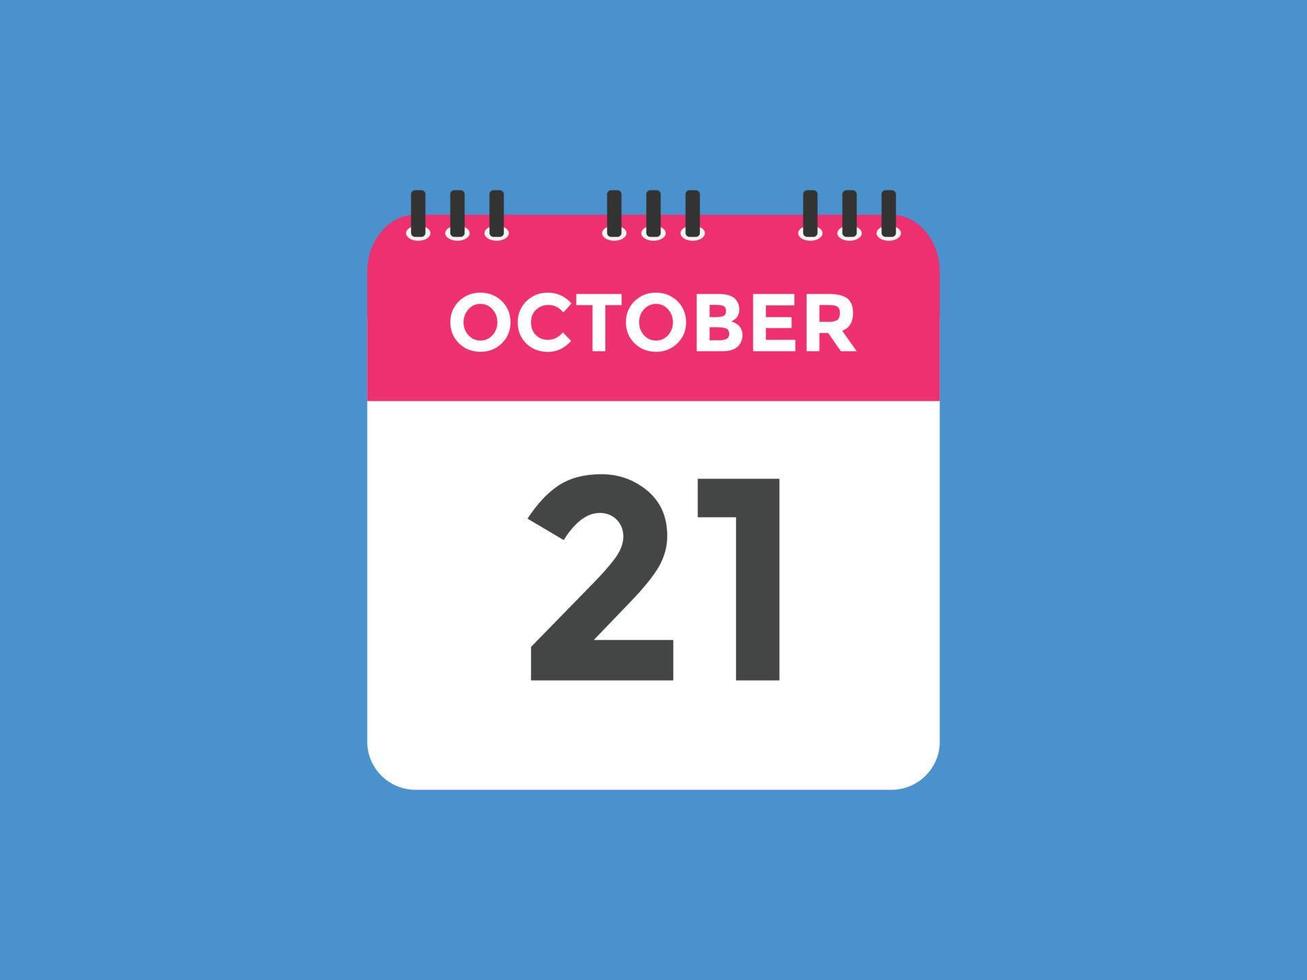 ottobre 21 calendario promemoria. 21 ottobre quotidiano calendario icona modello. calendario 21 ottobre icona design modello. vettore illustrazione